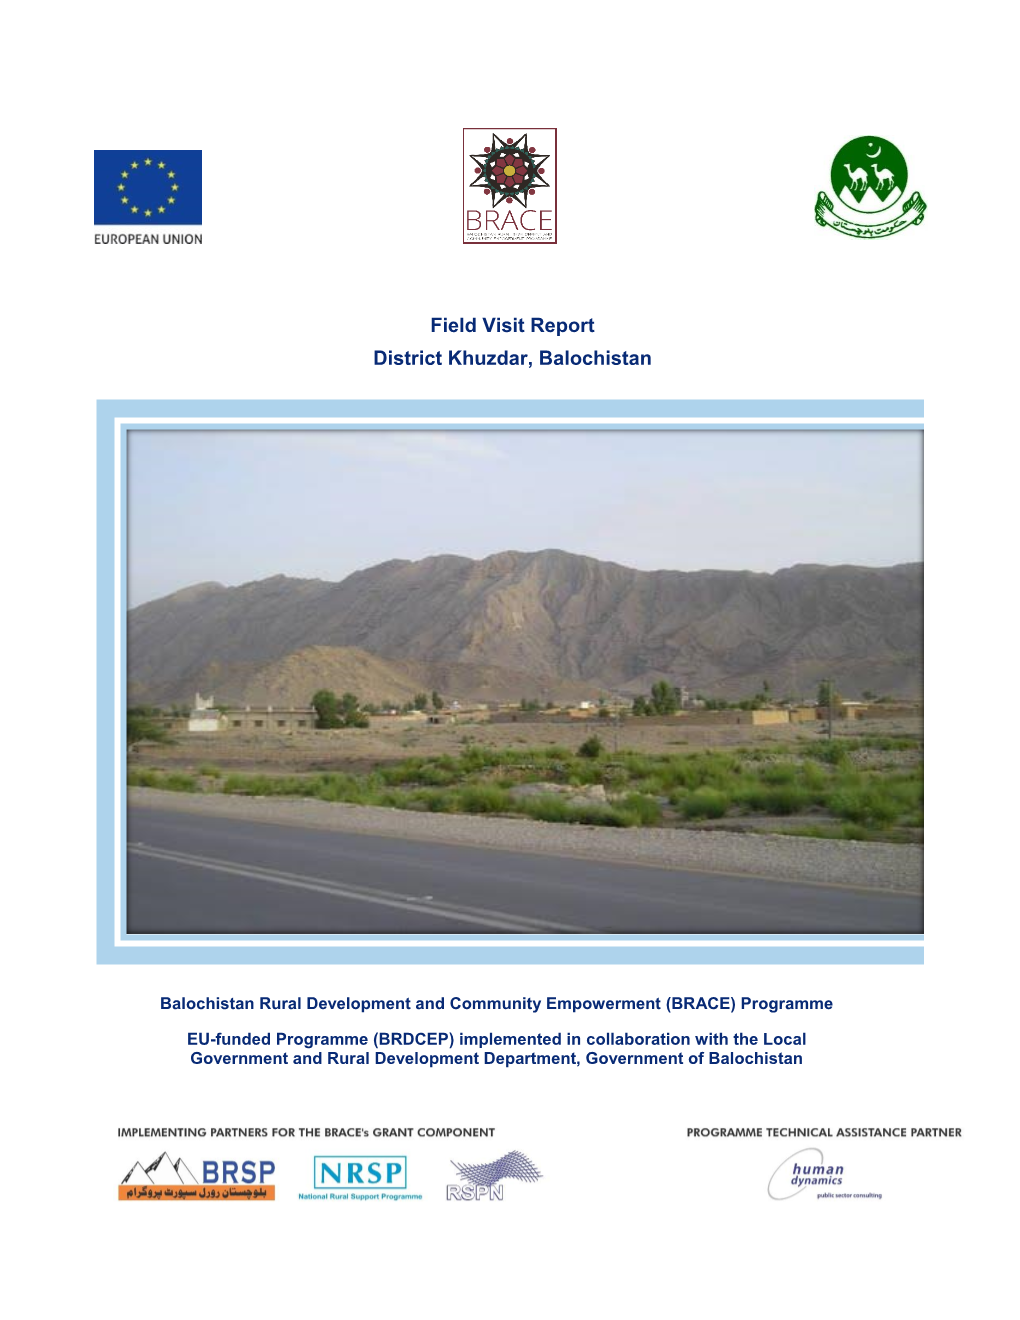 Field Visit Report District Khuzdar, Balochistan